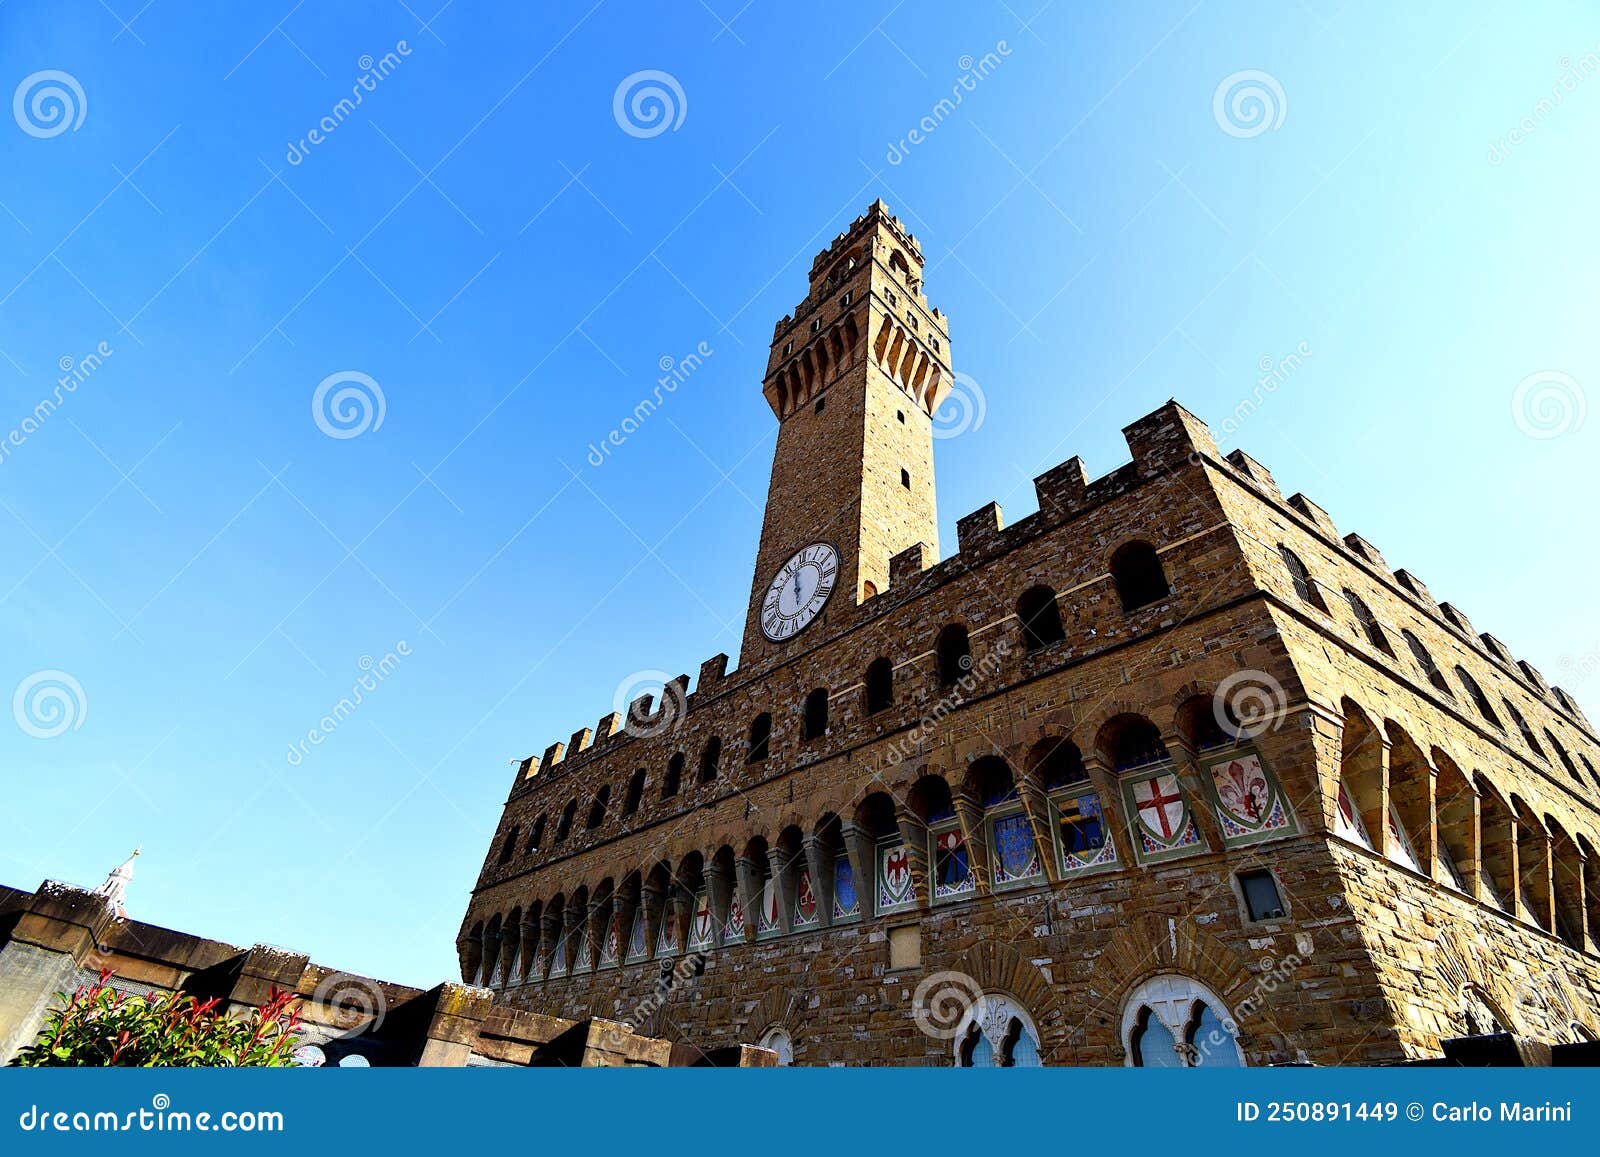 vista in dettaglio di palazzo vecchio in piazza signoria a firenze, toscana, italia